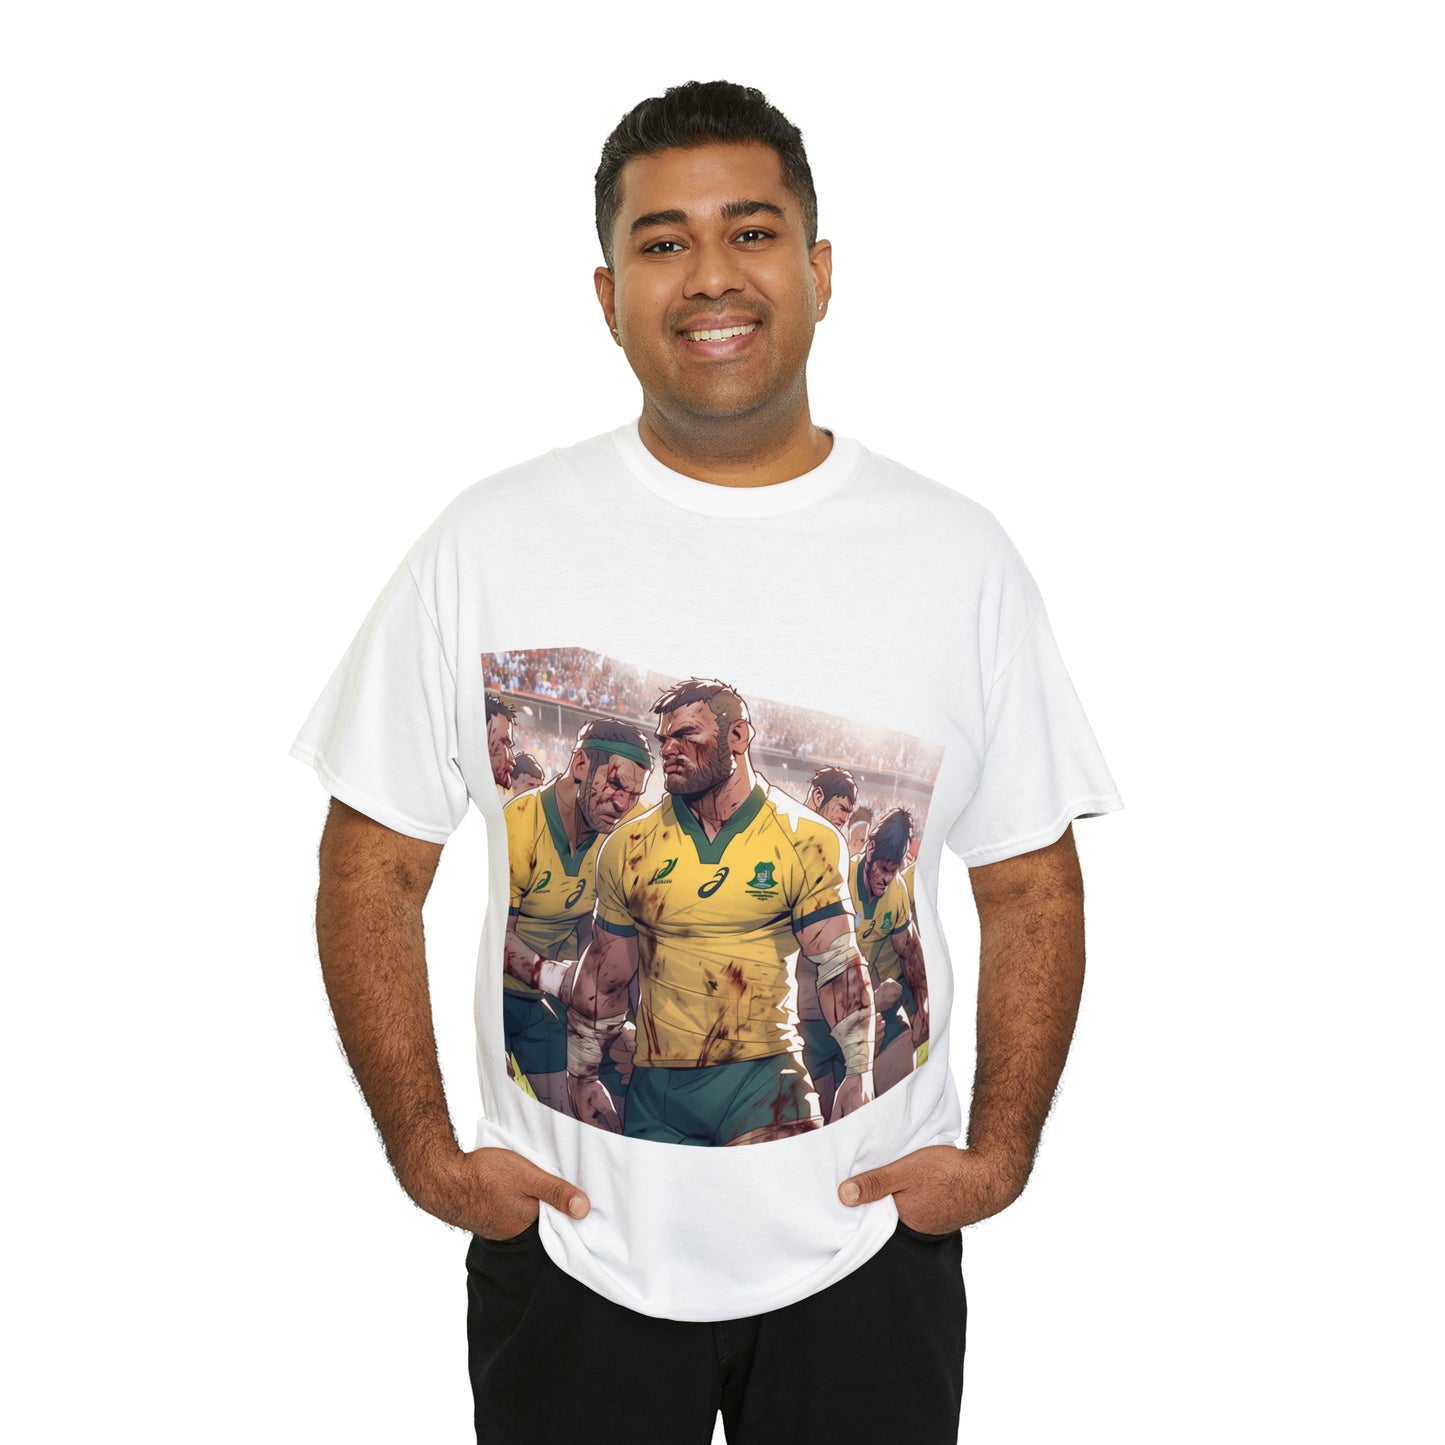 Aussie Aussie Aussie - light shirts